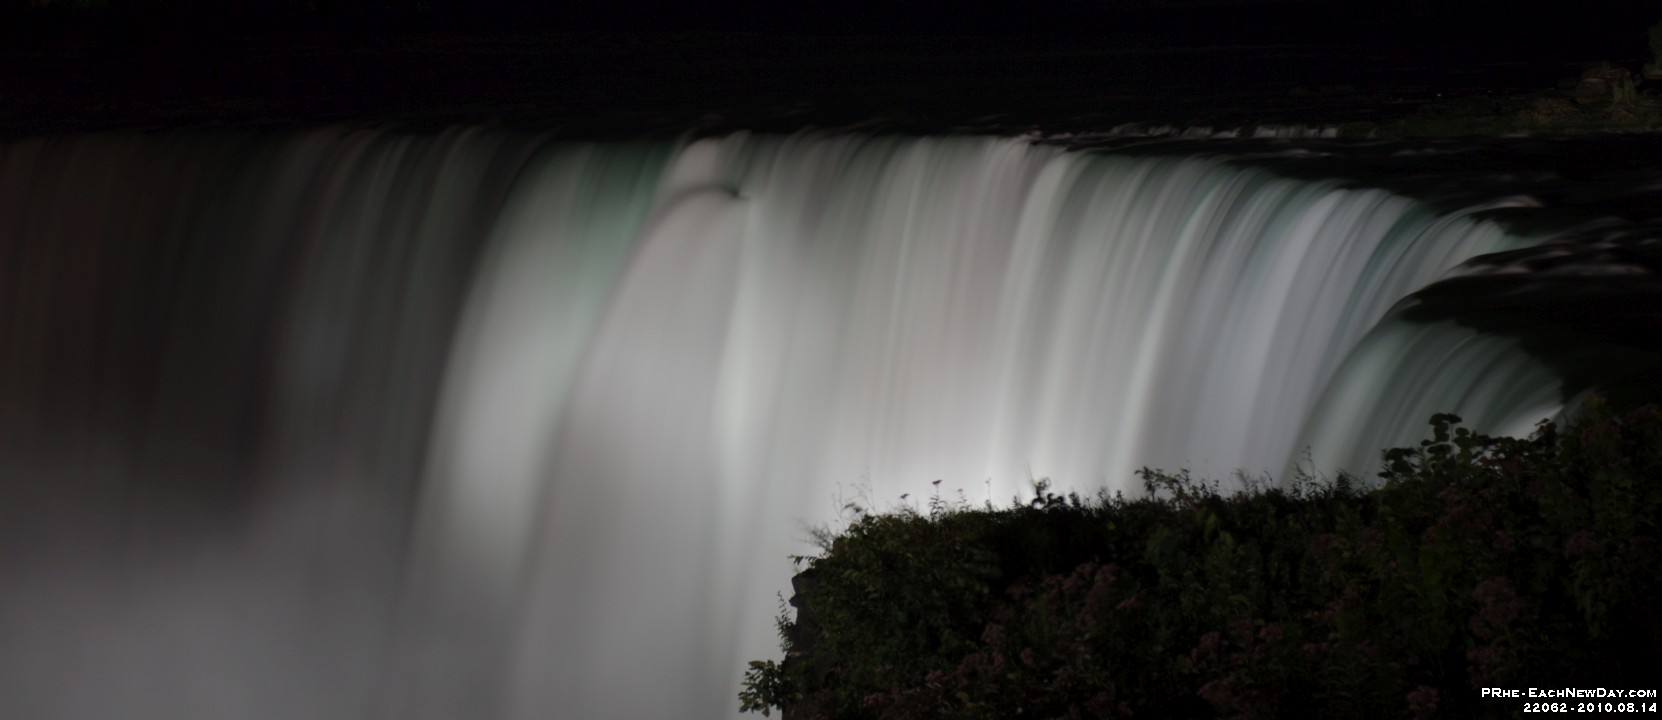 22062CrRe - Beth - My 100th birthday party - Niagara Falls - Nighttime walk by the Falls